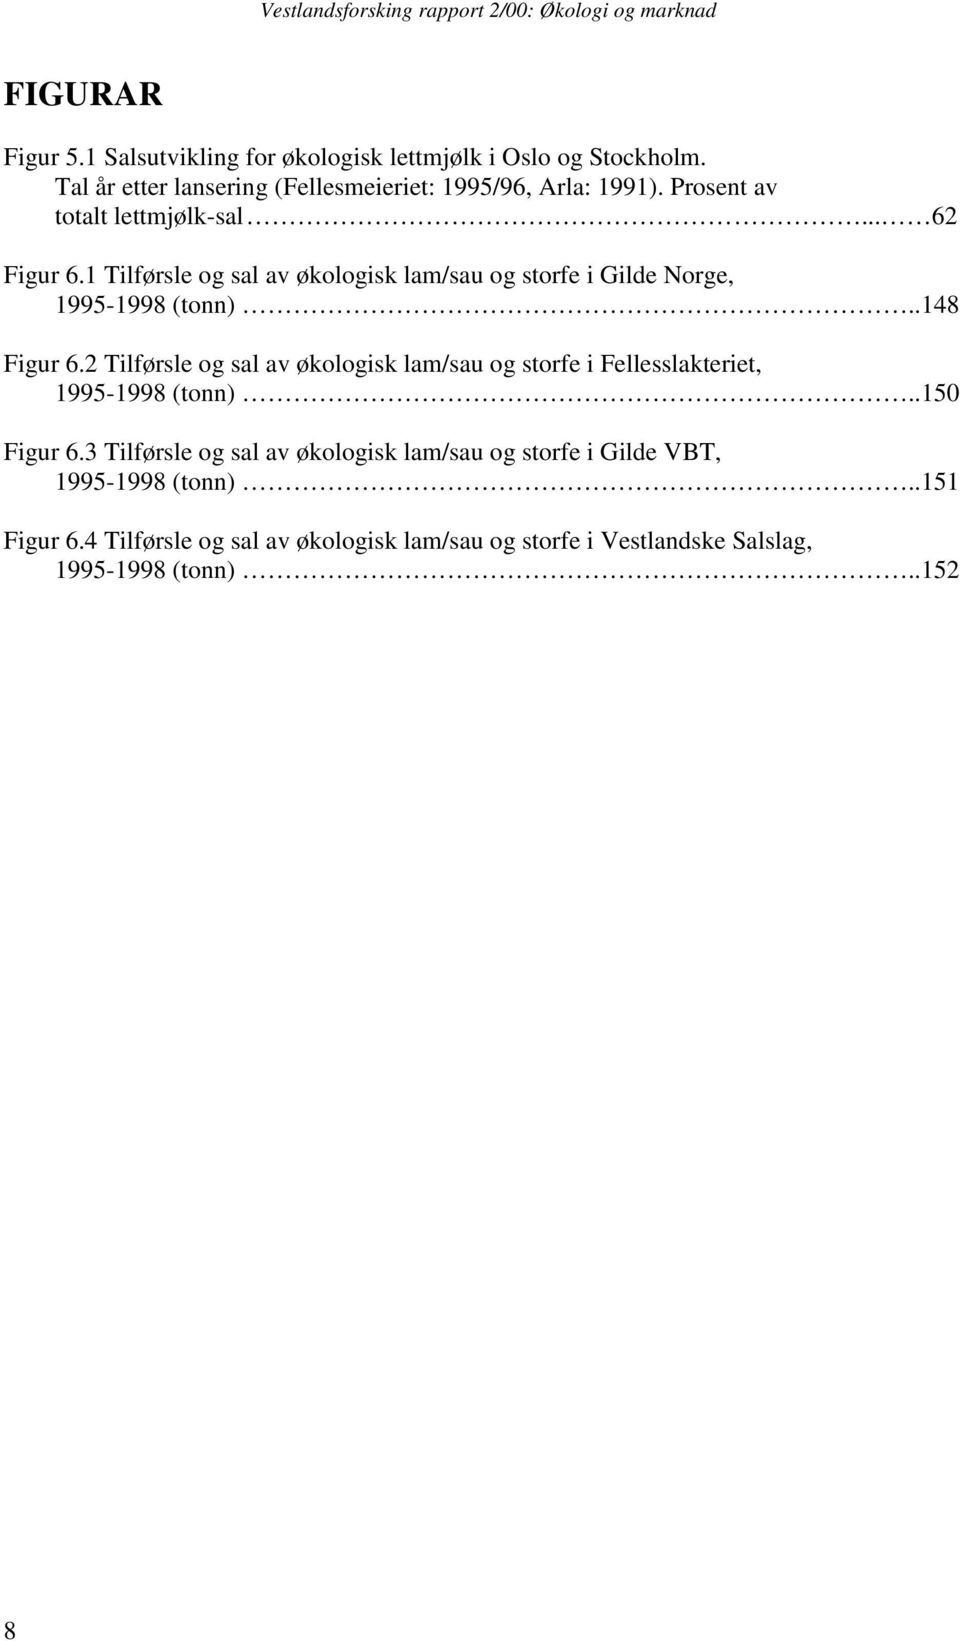 2 Tilførsle og sal av økologisk lam/sau og storfe i Fellesslakteriet, 1995-1998 (tonn)..150 Figur 6.